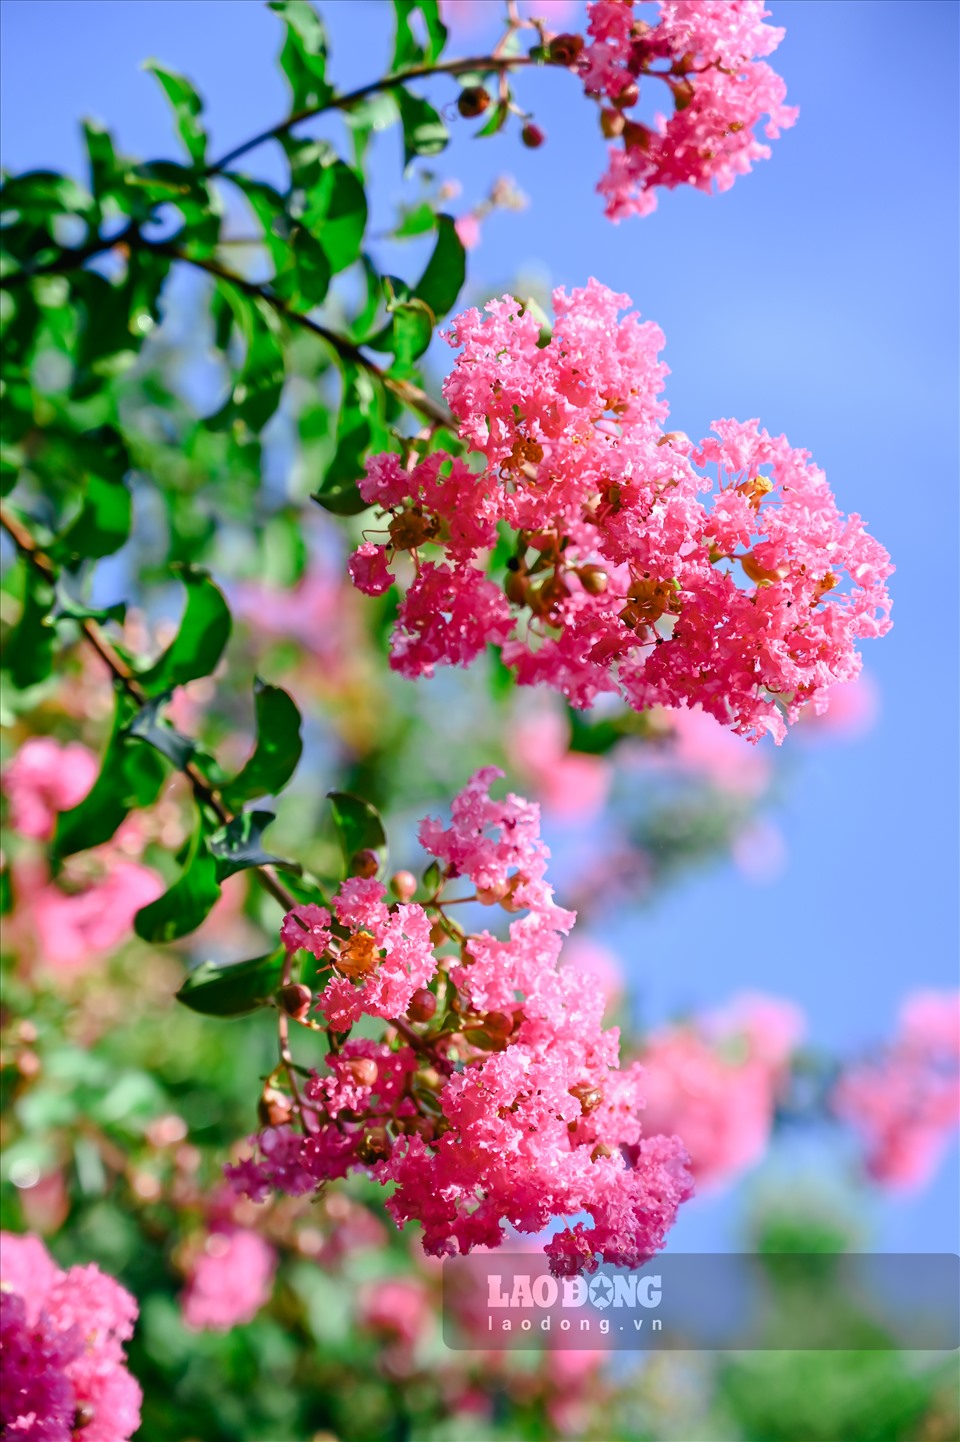 Tường vi còn được gọi bằng một cái tên rất Á đông – Tử Vi. Loài hoa có nguồn gốc từ vùng Đông Á. Tường vi thuộc nhóm cây thân gỗ, phân cành nhiều nhánh. Tường vi là một giống hồng cổ, hoa nhiều, có mùi thơm dịu dàng.